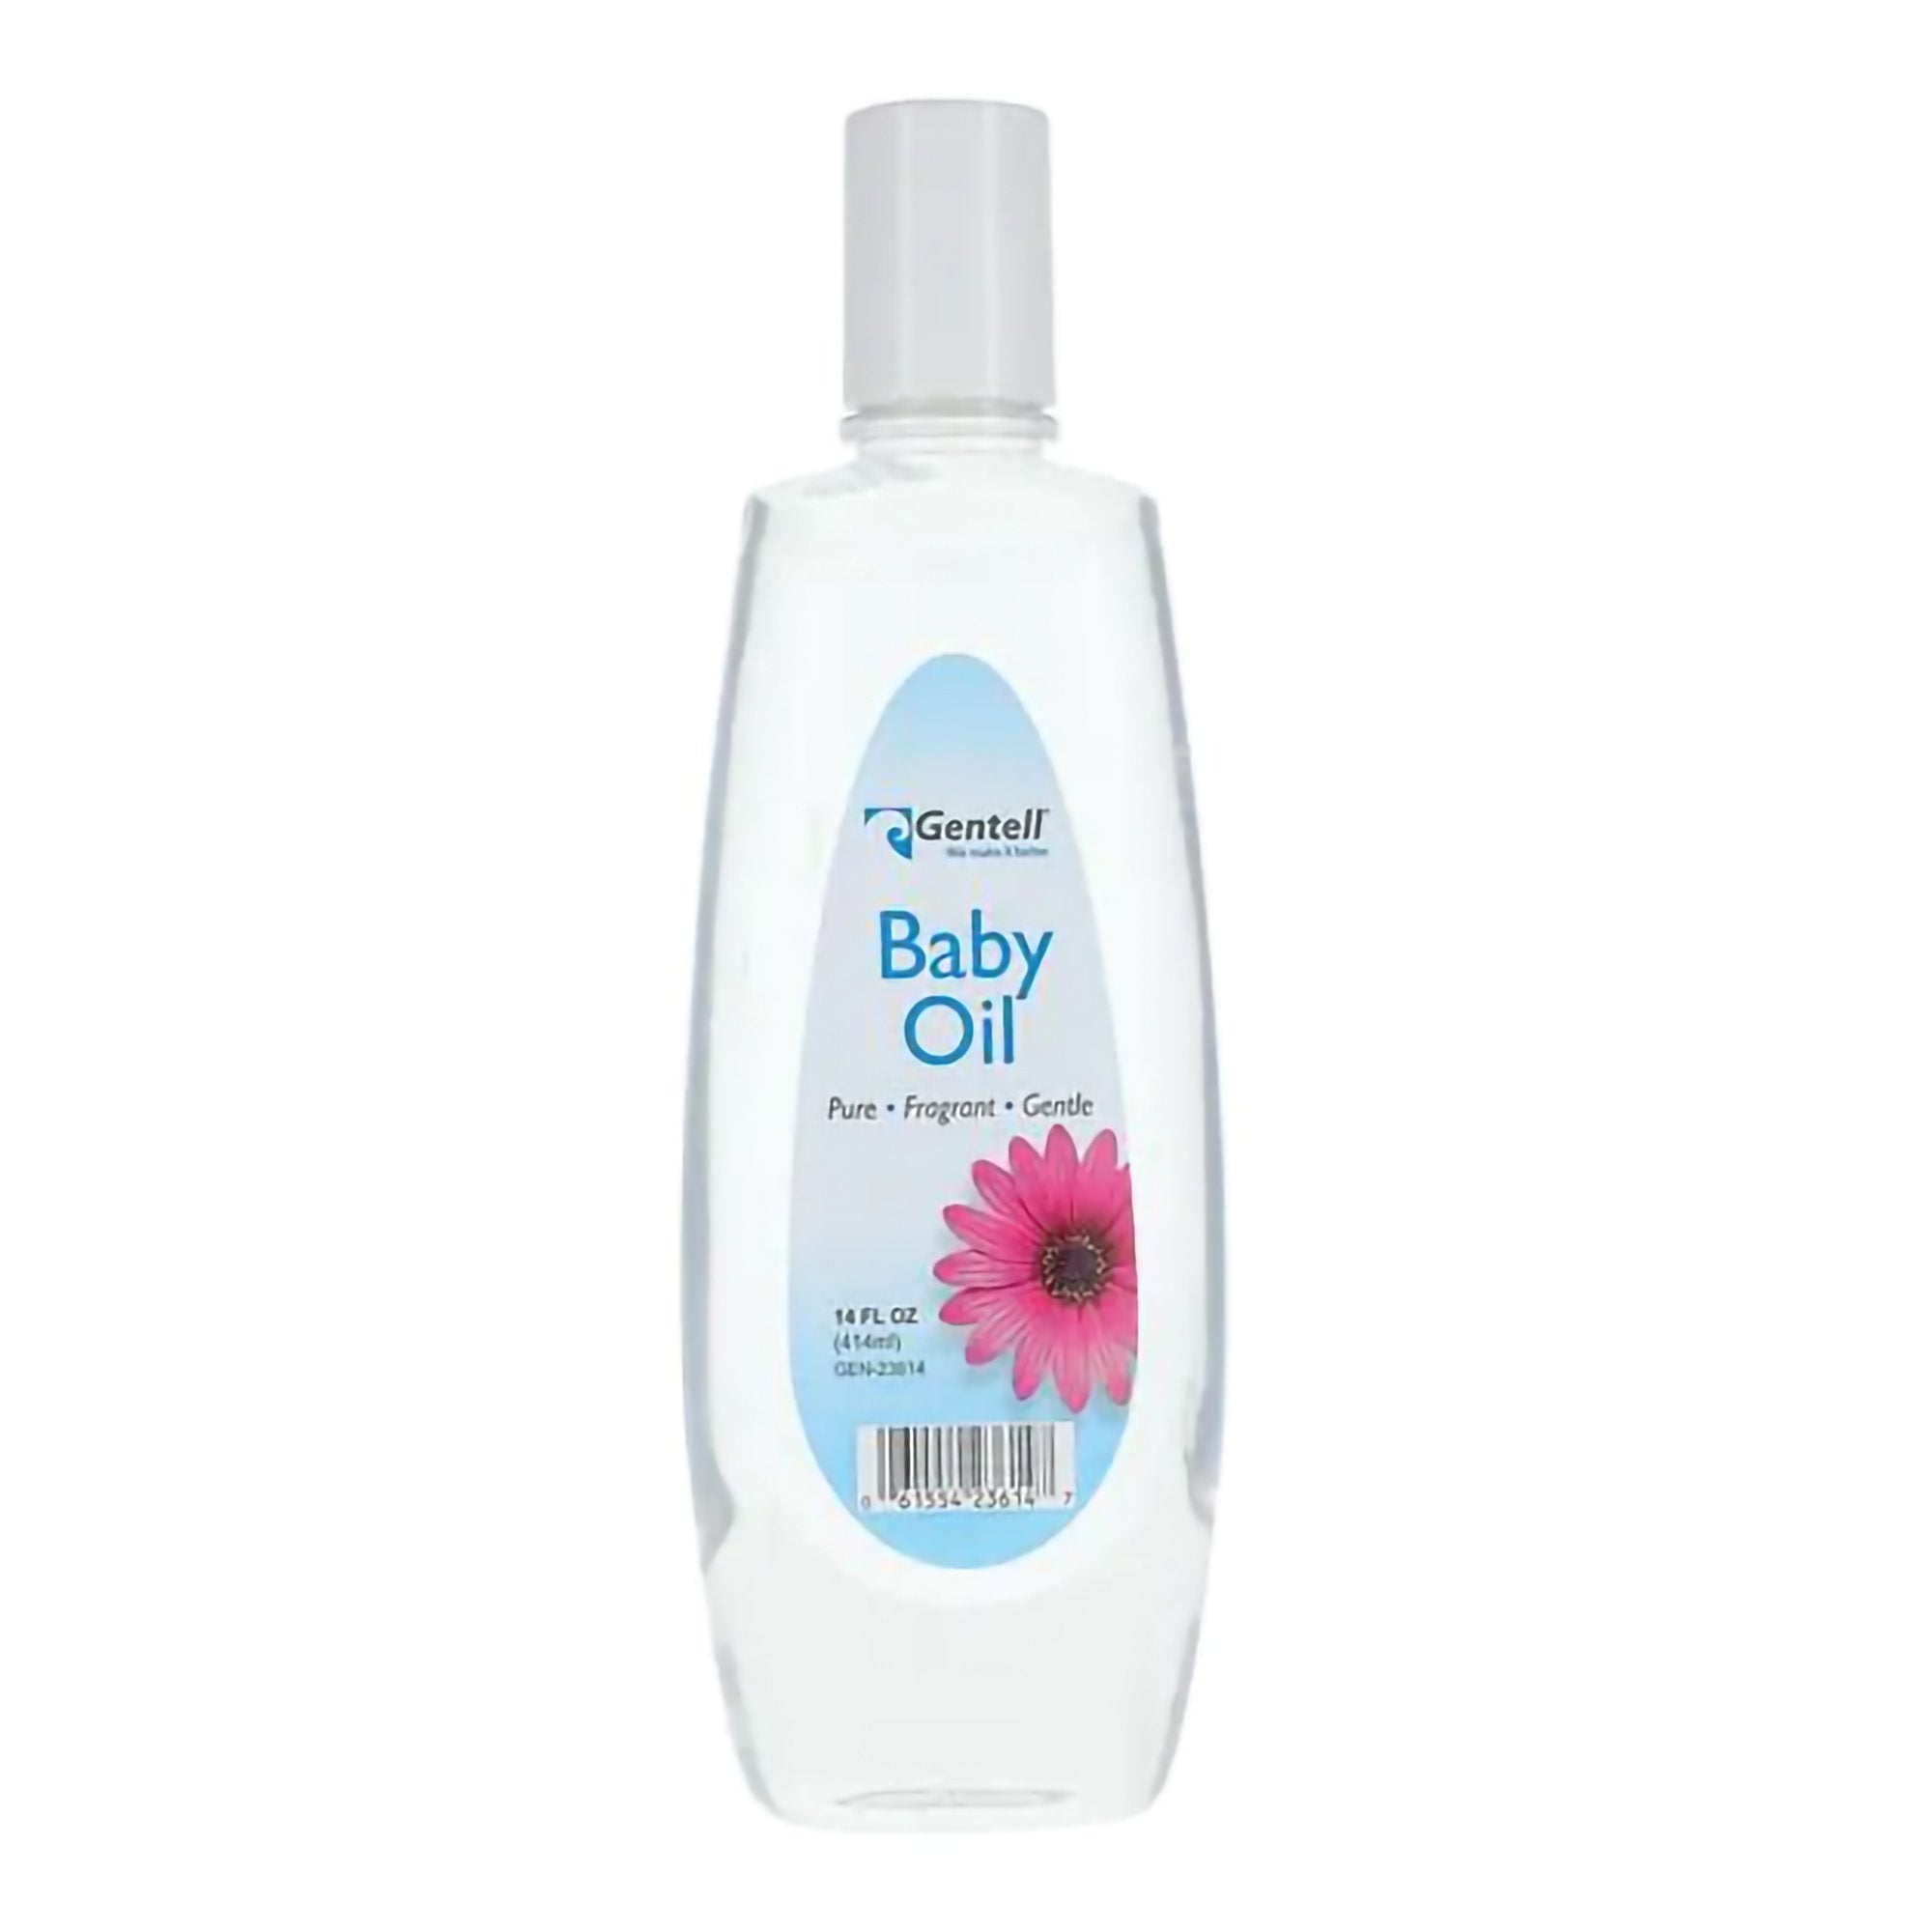 Baby Oil Gentell® 14 oz. Bottle Scented Oil